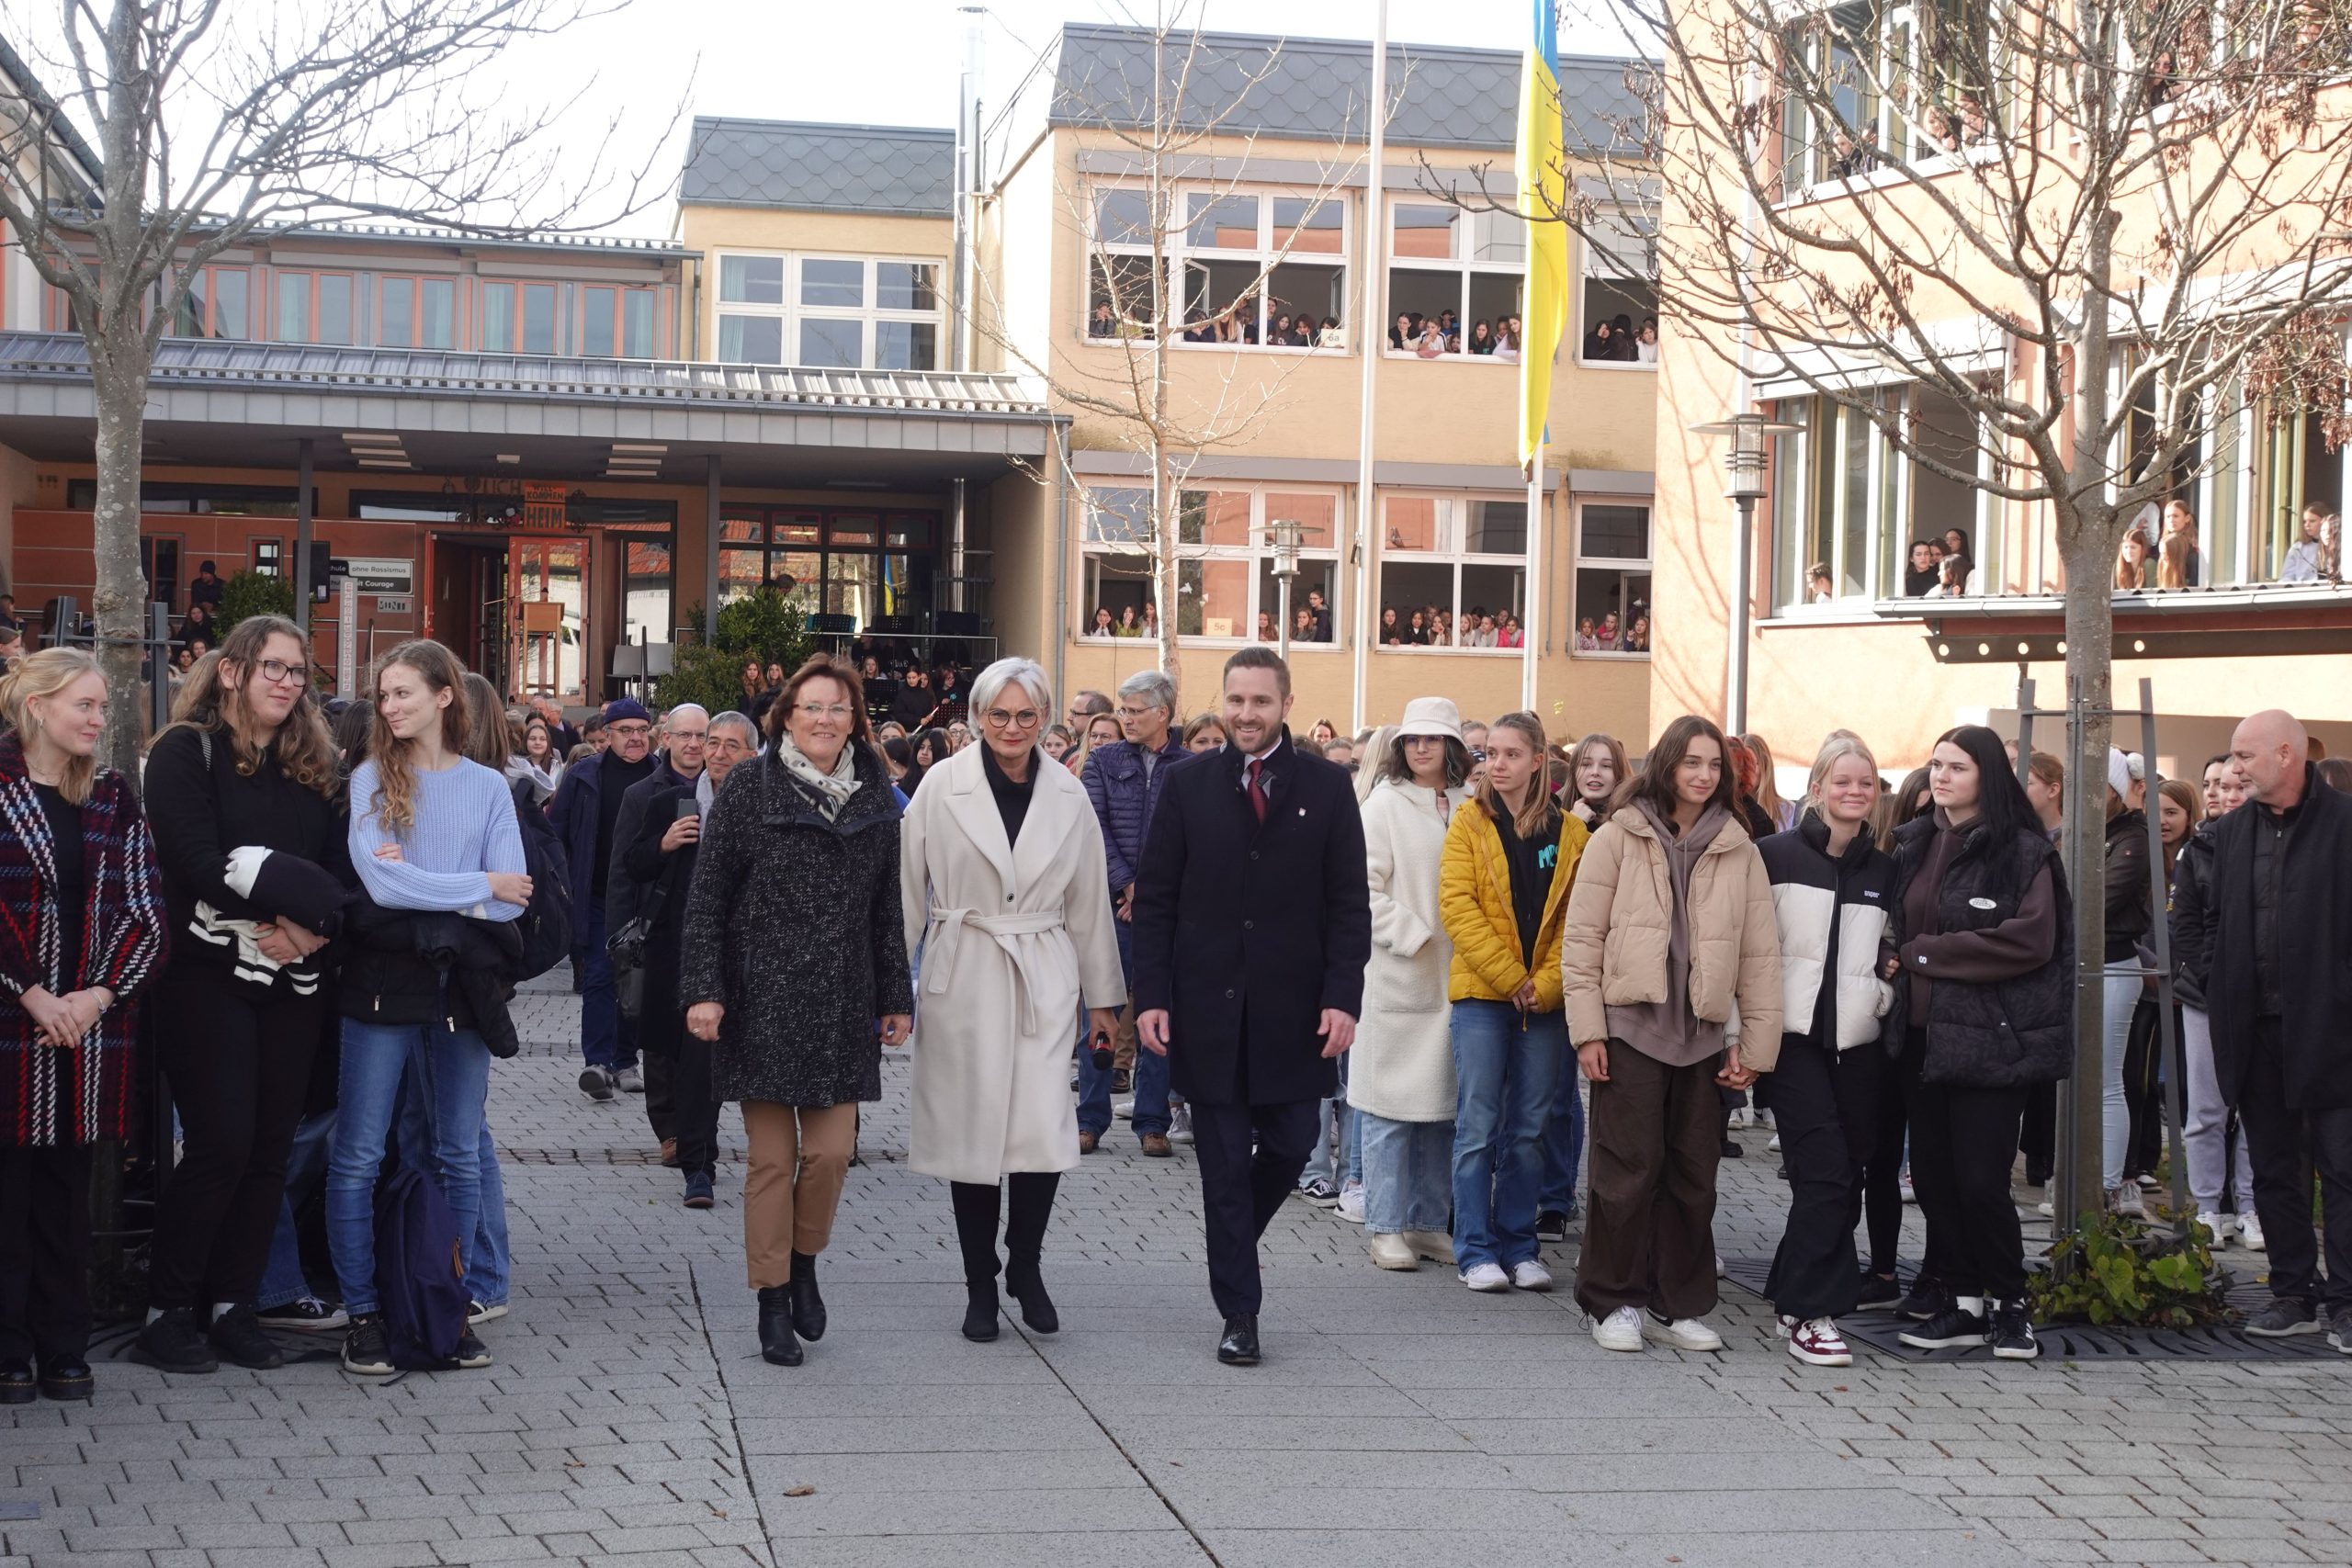 Gabi Leicht, Marianne Singer und Daniel Artmann auf dem Weg zur ersten Erinnerungsschleife in Rosenheim durch die Schulgemeinschaft und Ehrengäste